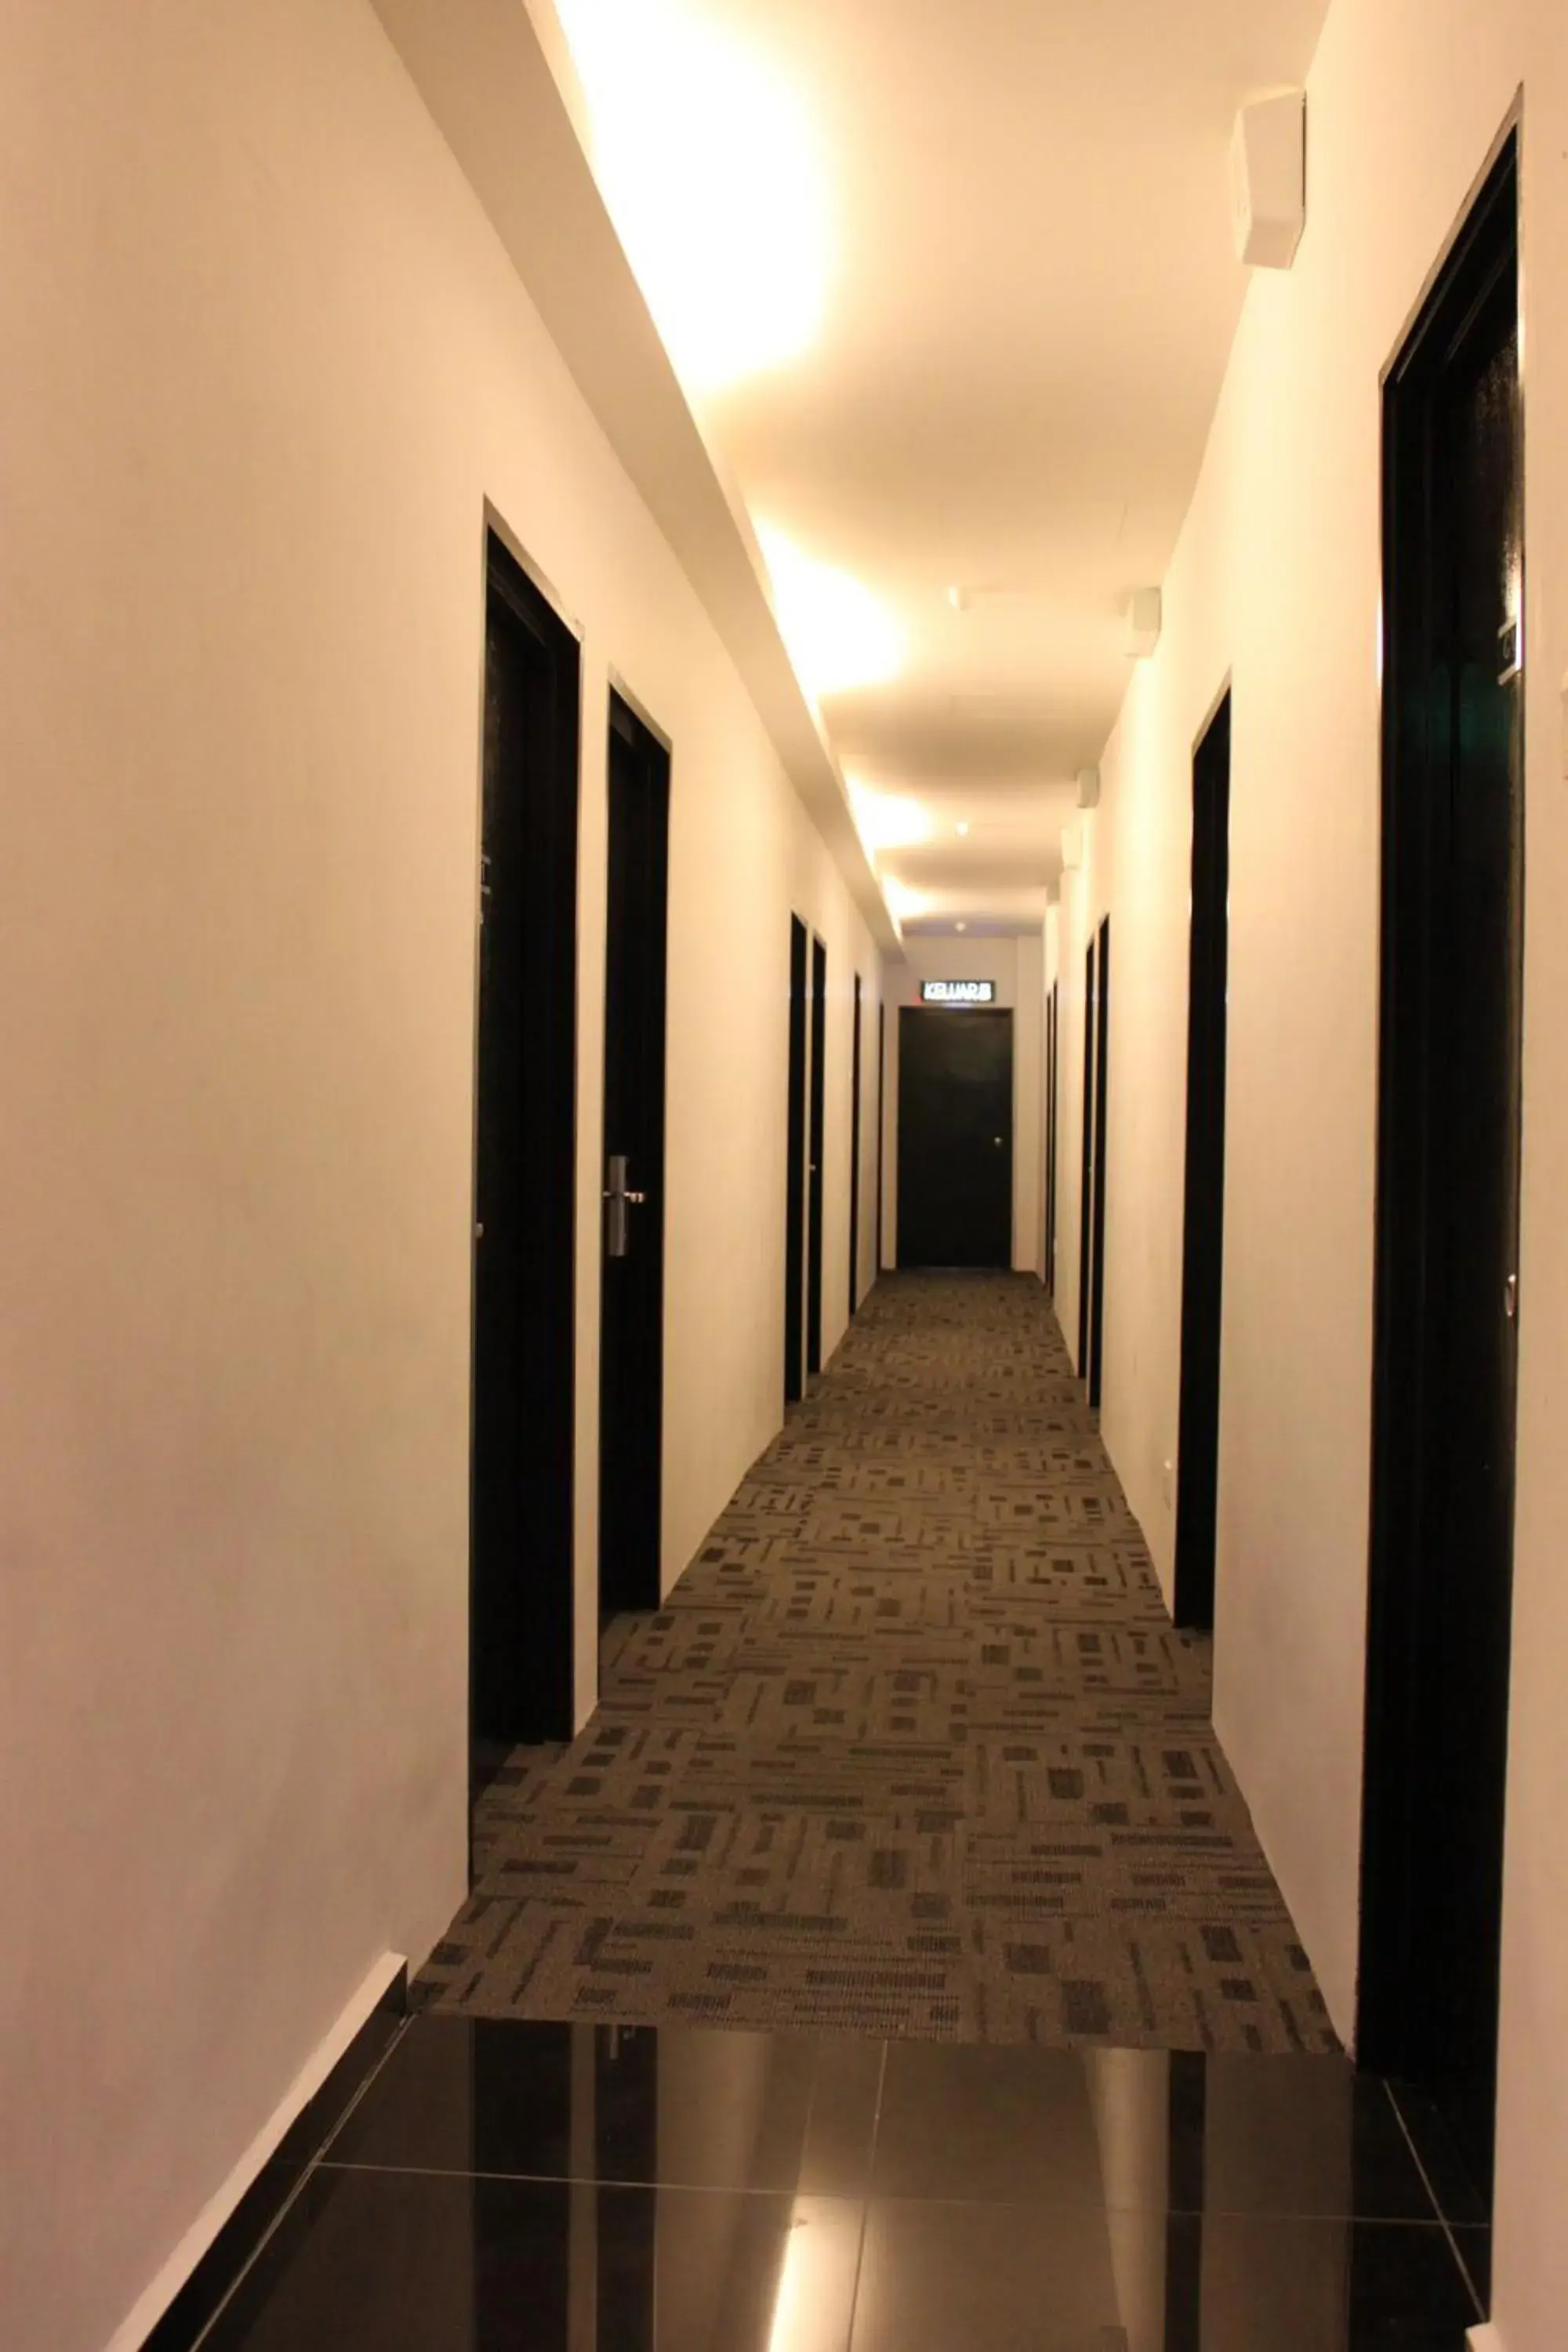 Lobby or reception in Dream Hotel